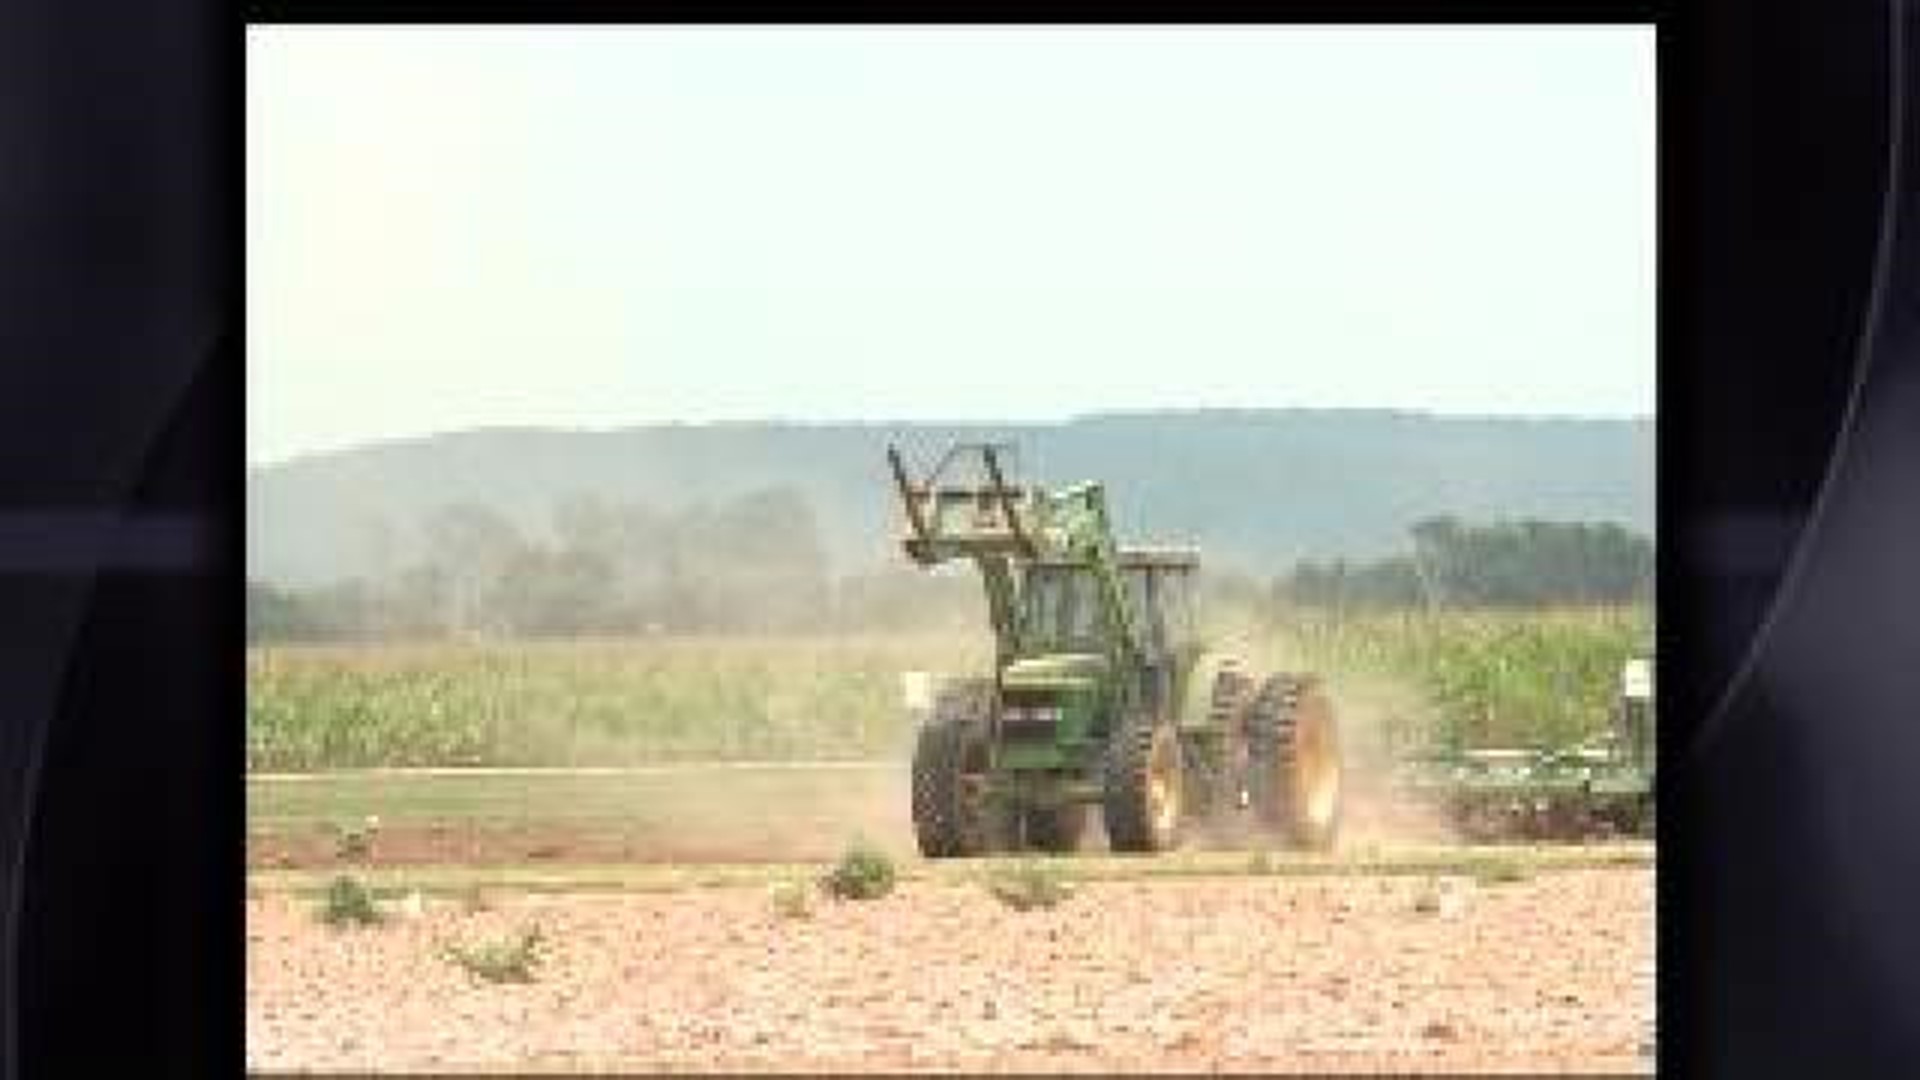 US Sen. Boozman Says Farm Bill Will Devastate Southern Farmers